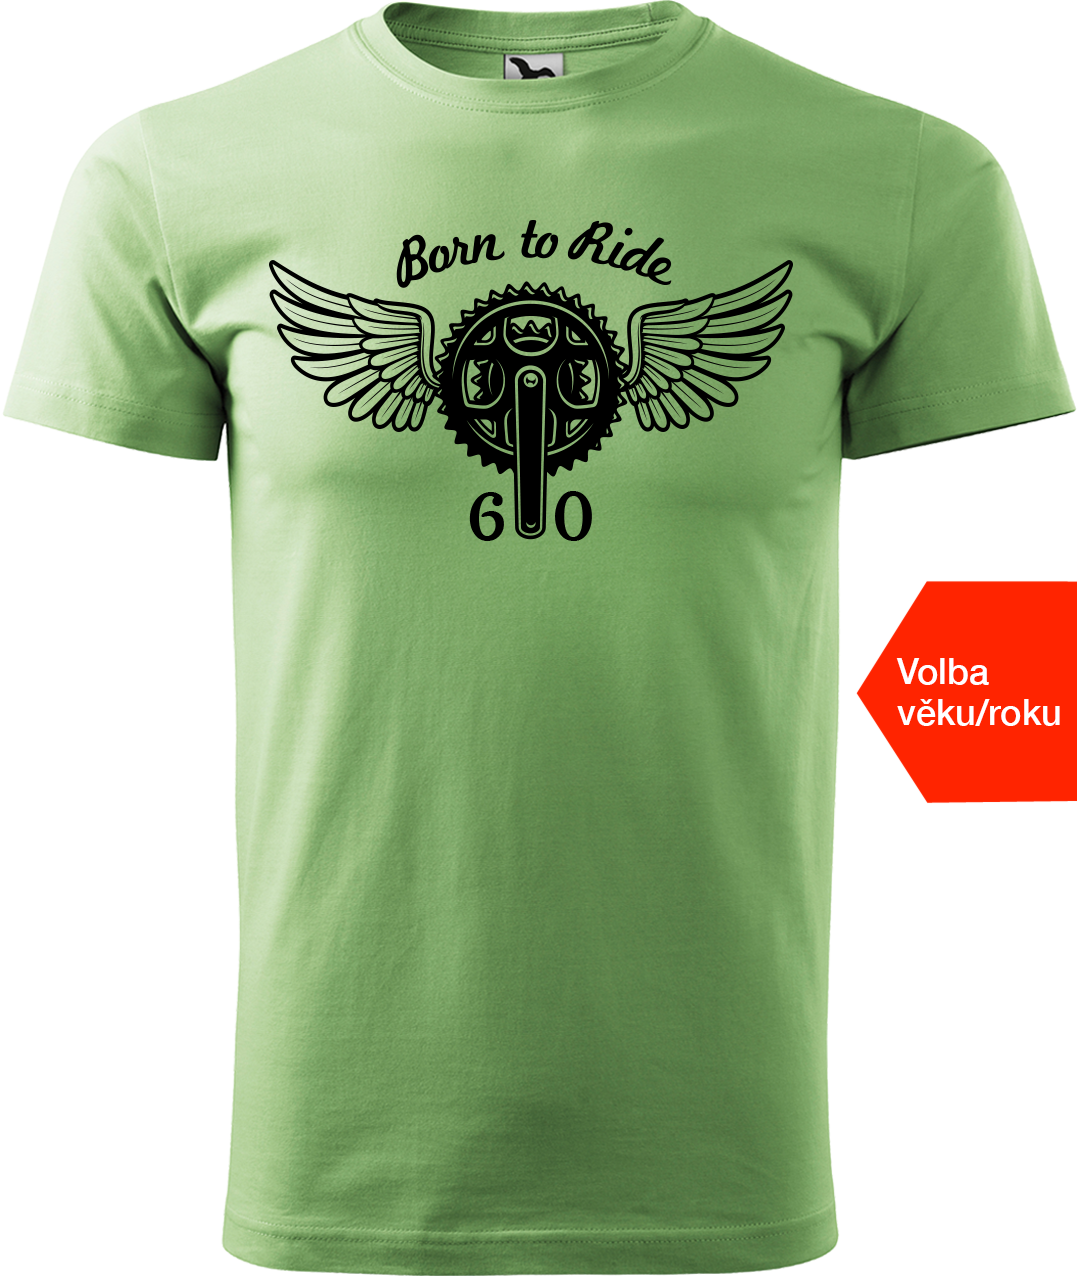 Pánské tričko pro cyklistu s věkem/rokem narození - Born to Ride (převodník) Velikost: M, Barva: Trávově zelená (39)